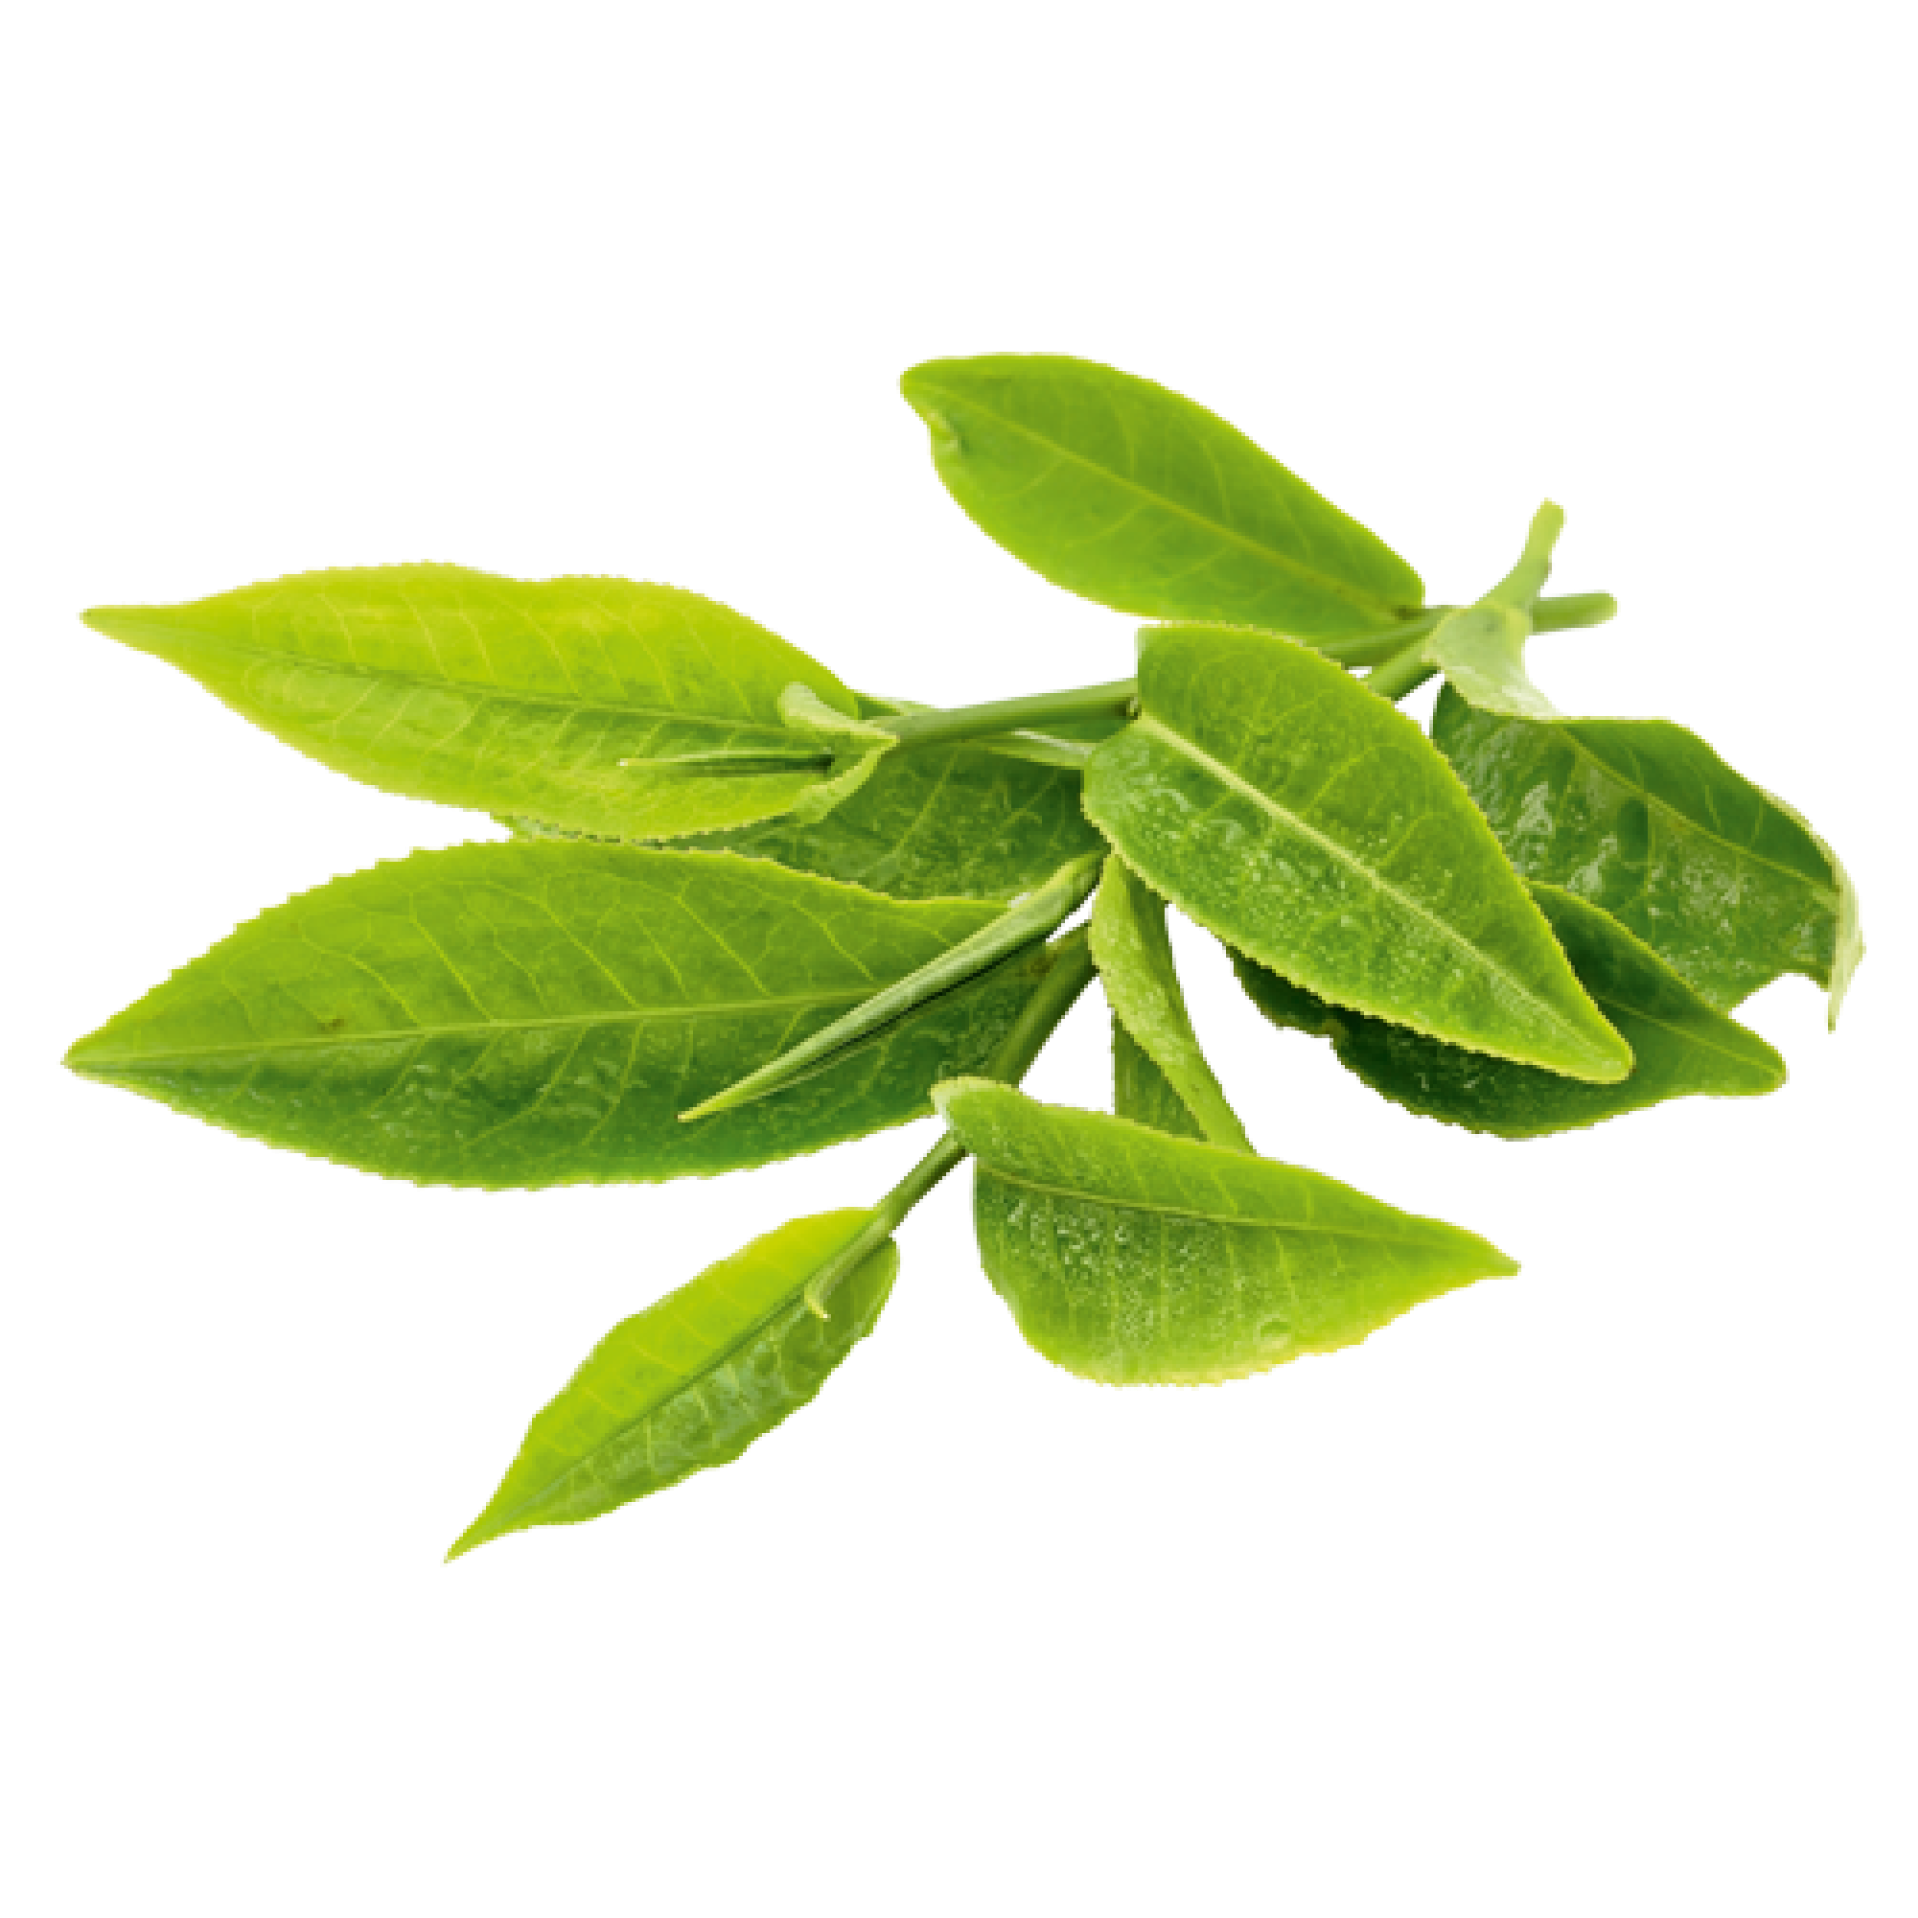 Image of tea leaves